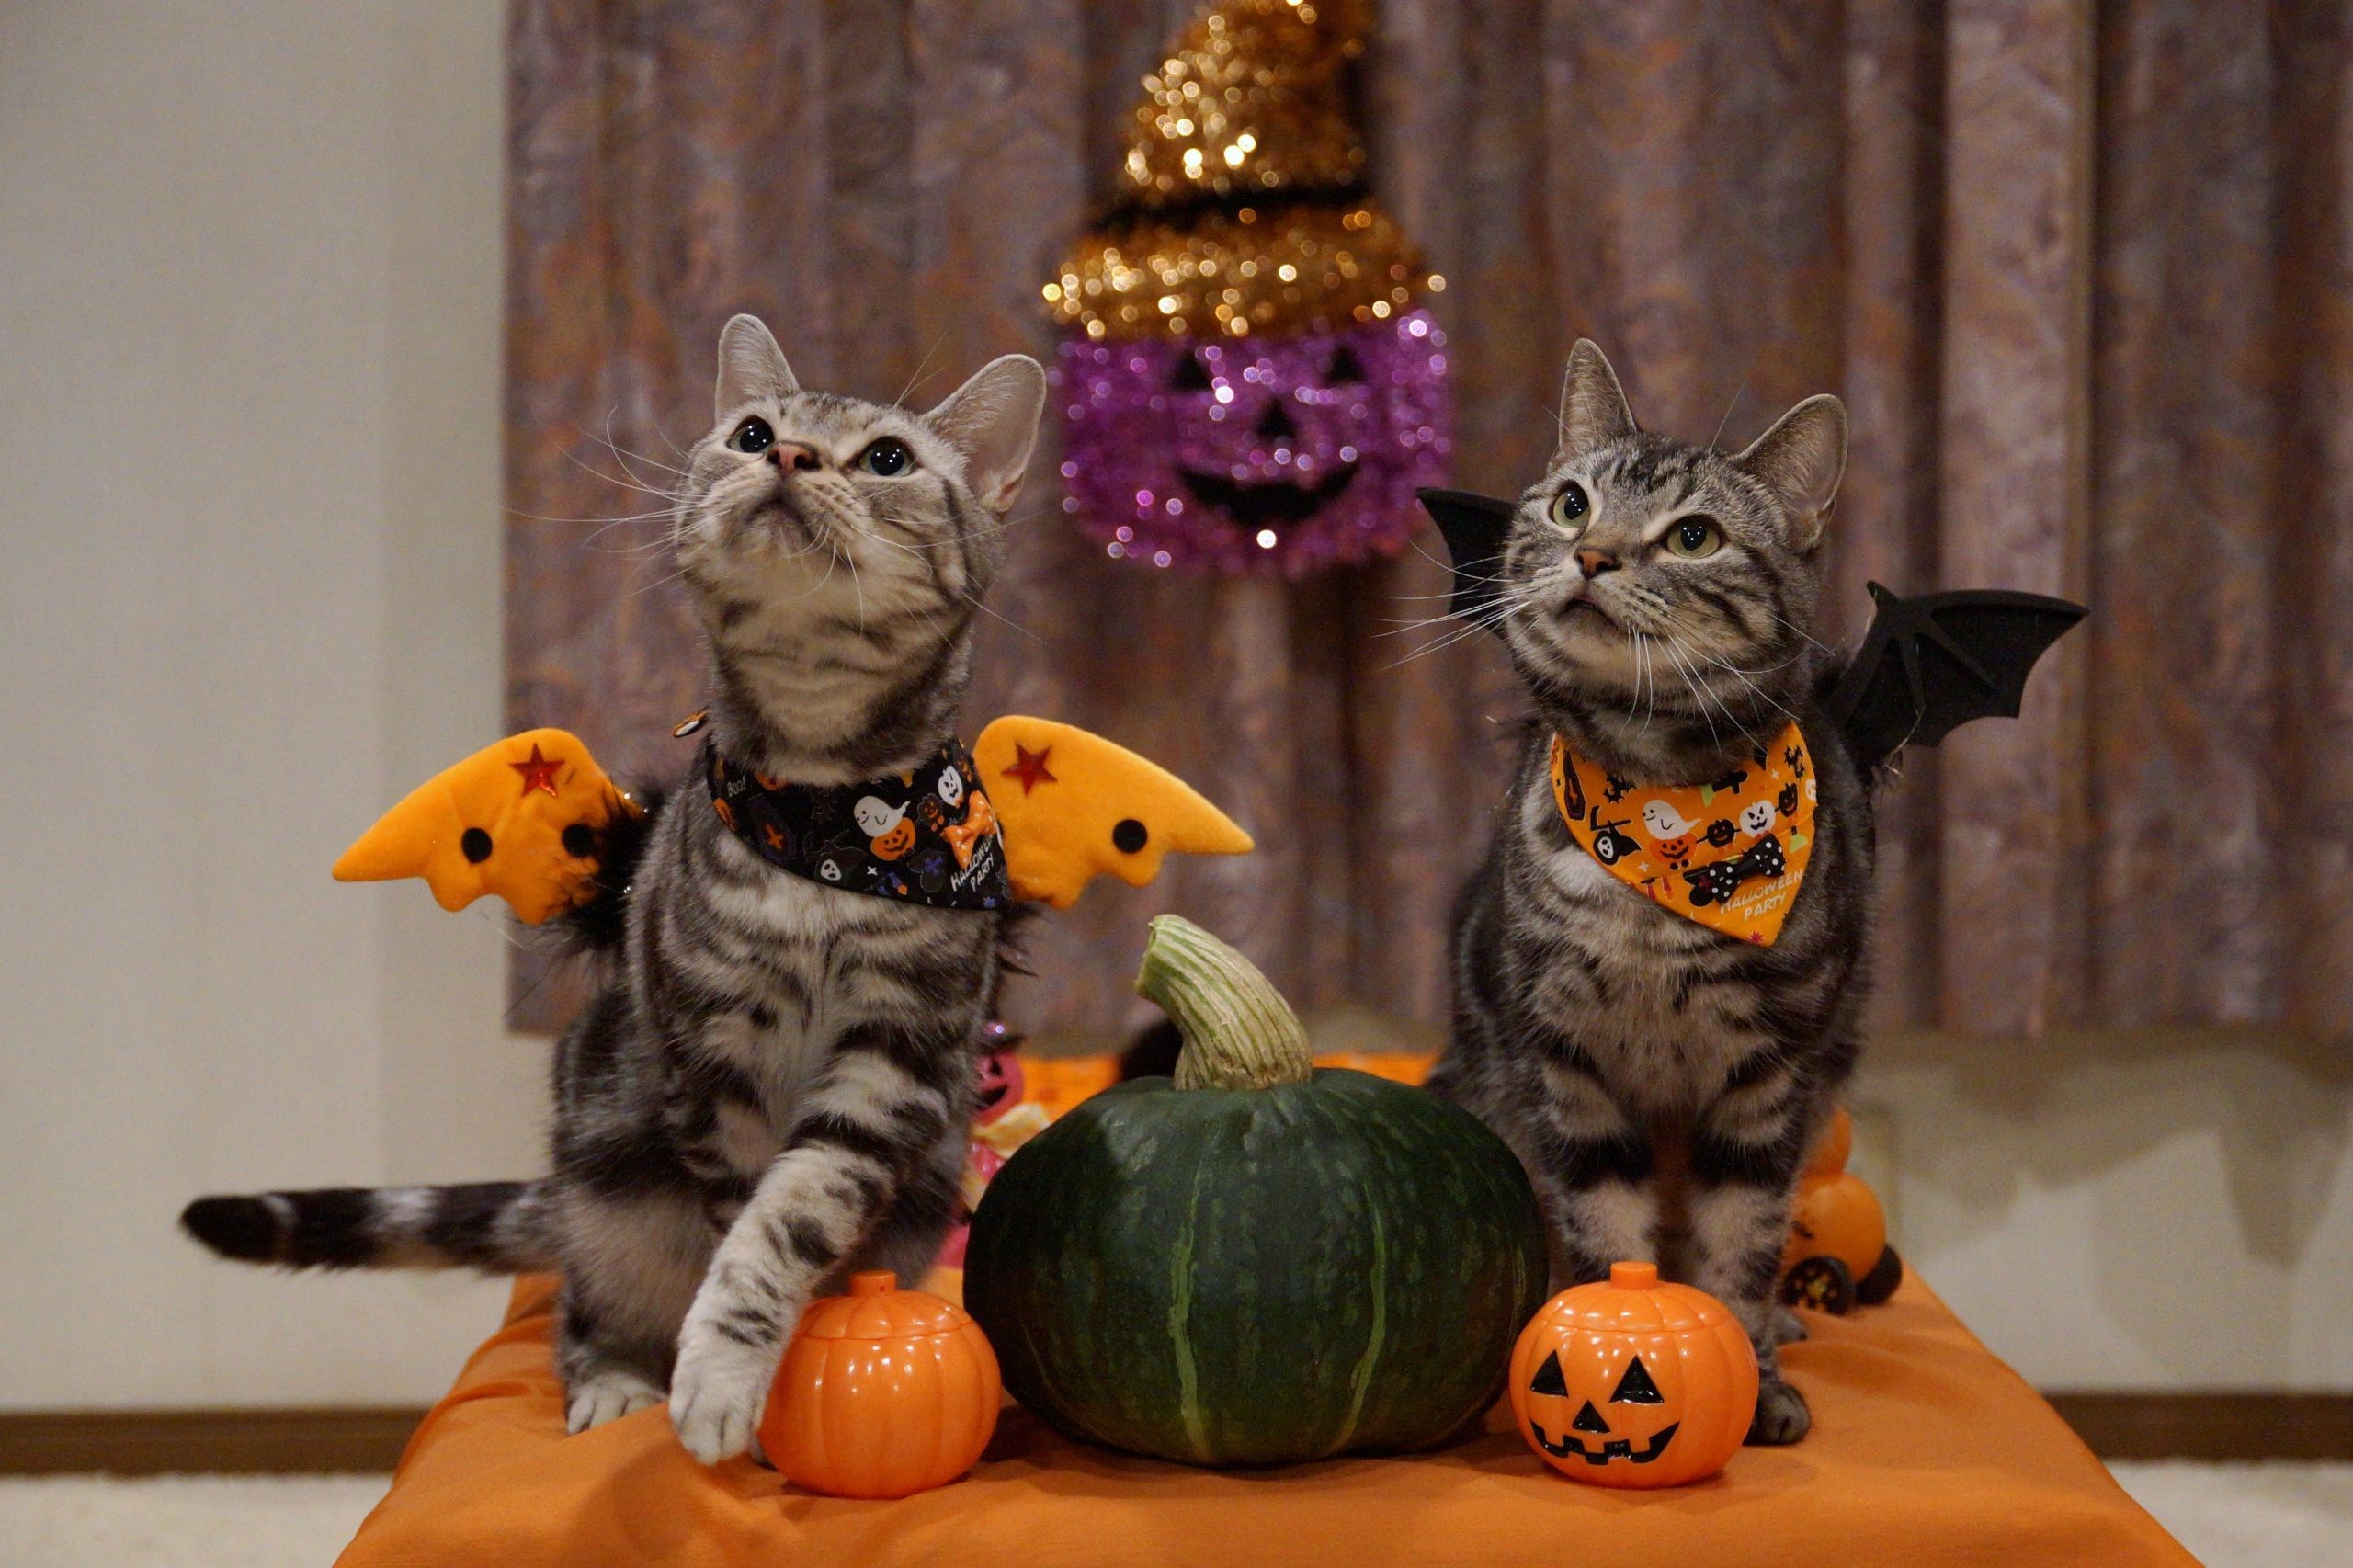 Wallpaper Cats Halloween Pumpkin Two Animals Image Download. Halloween animals, Pet costumes, Halloween cat